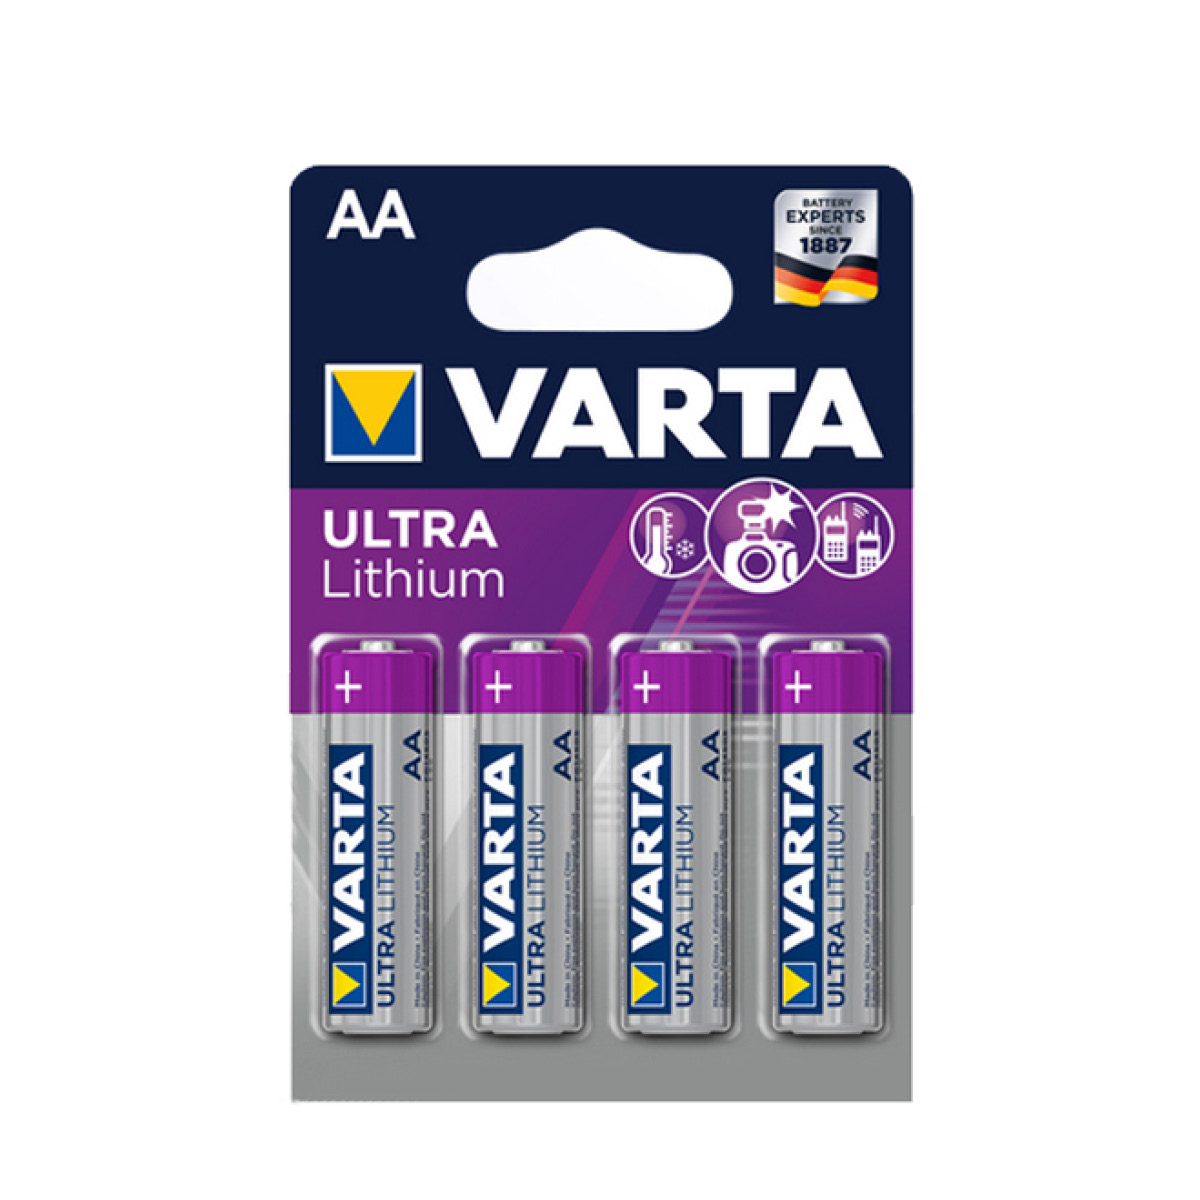 Varta Ultra Lithium Mignon N AA 4er Batterie